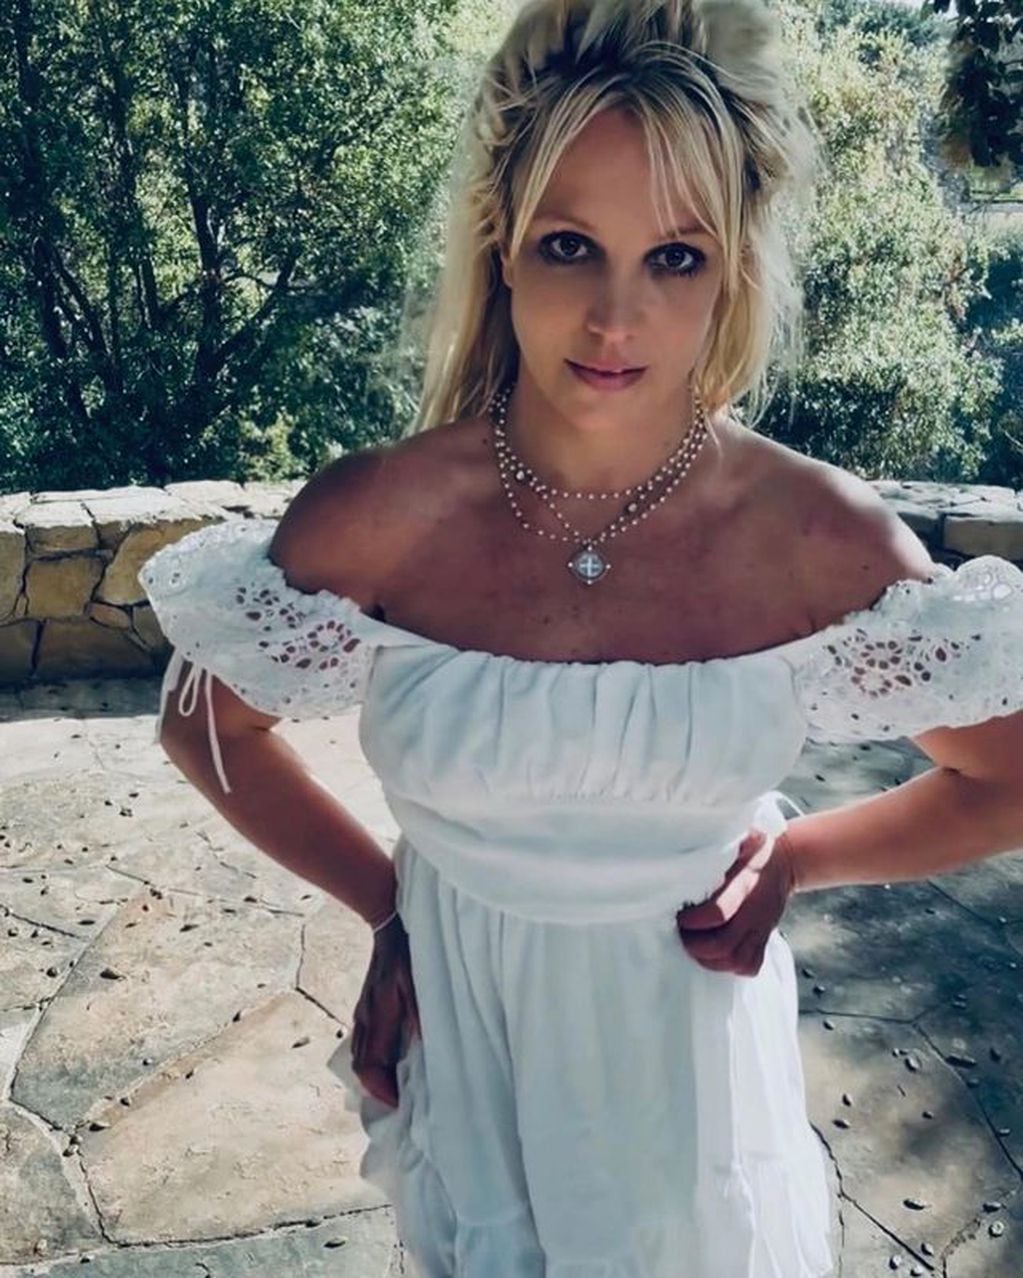 “Mi historia en mis términos”: así es como Britney Spears planea contar ...